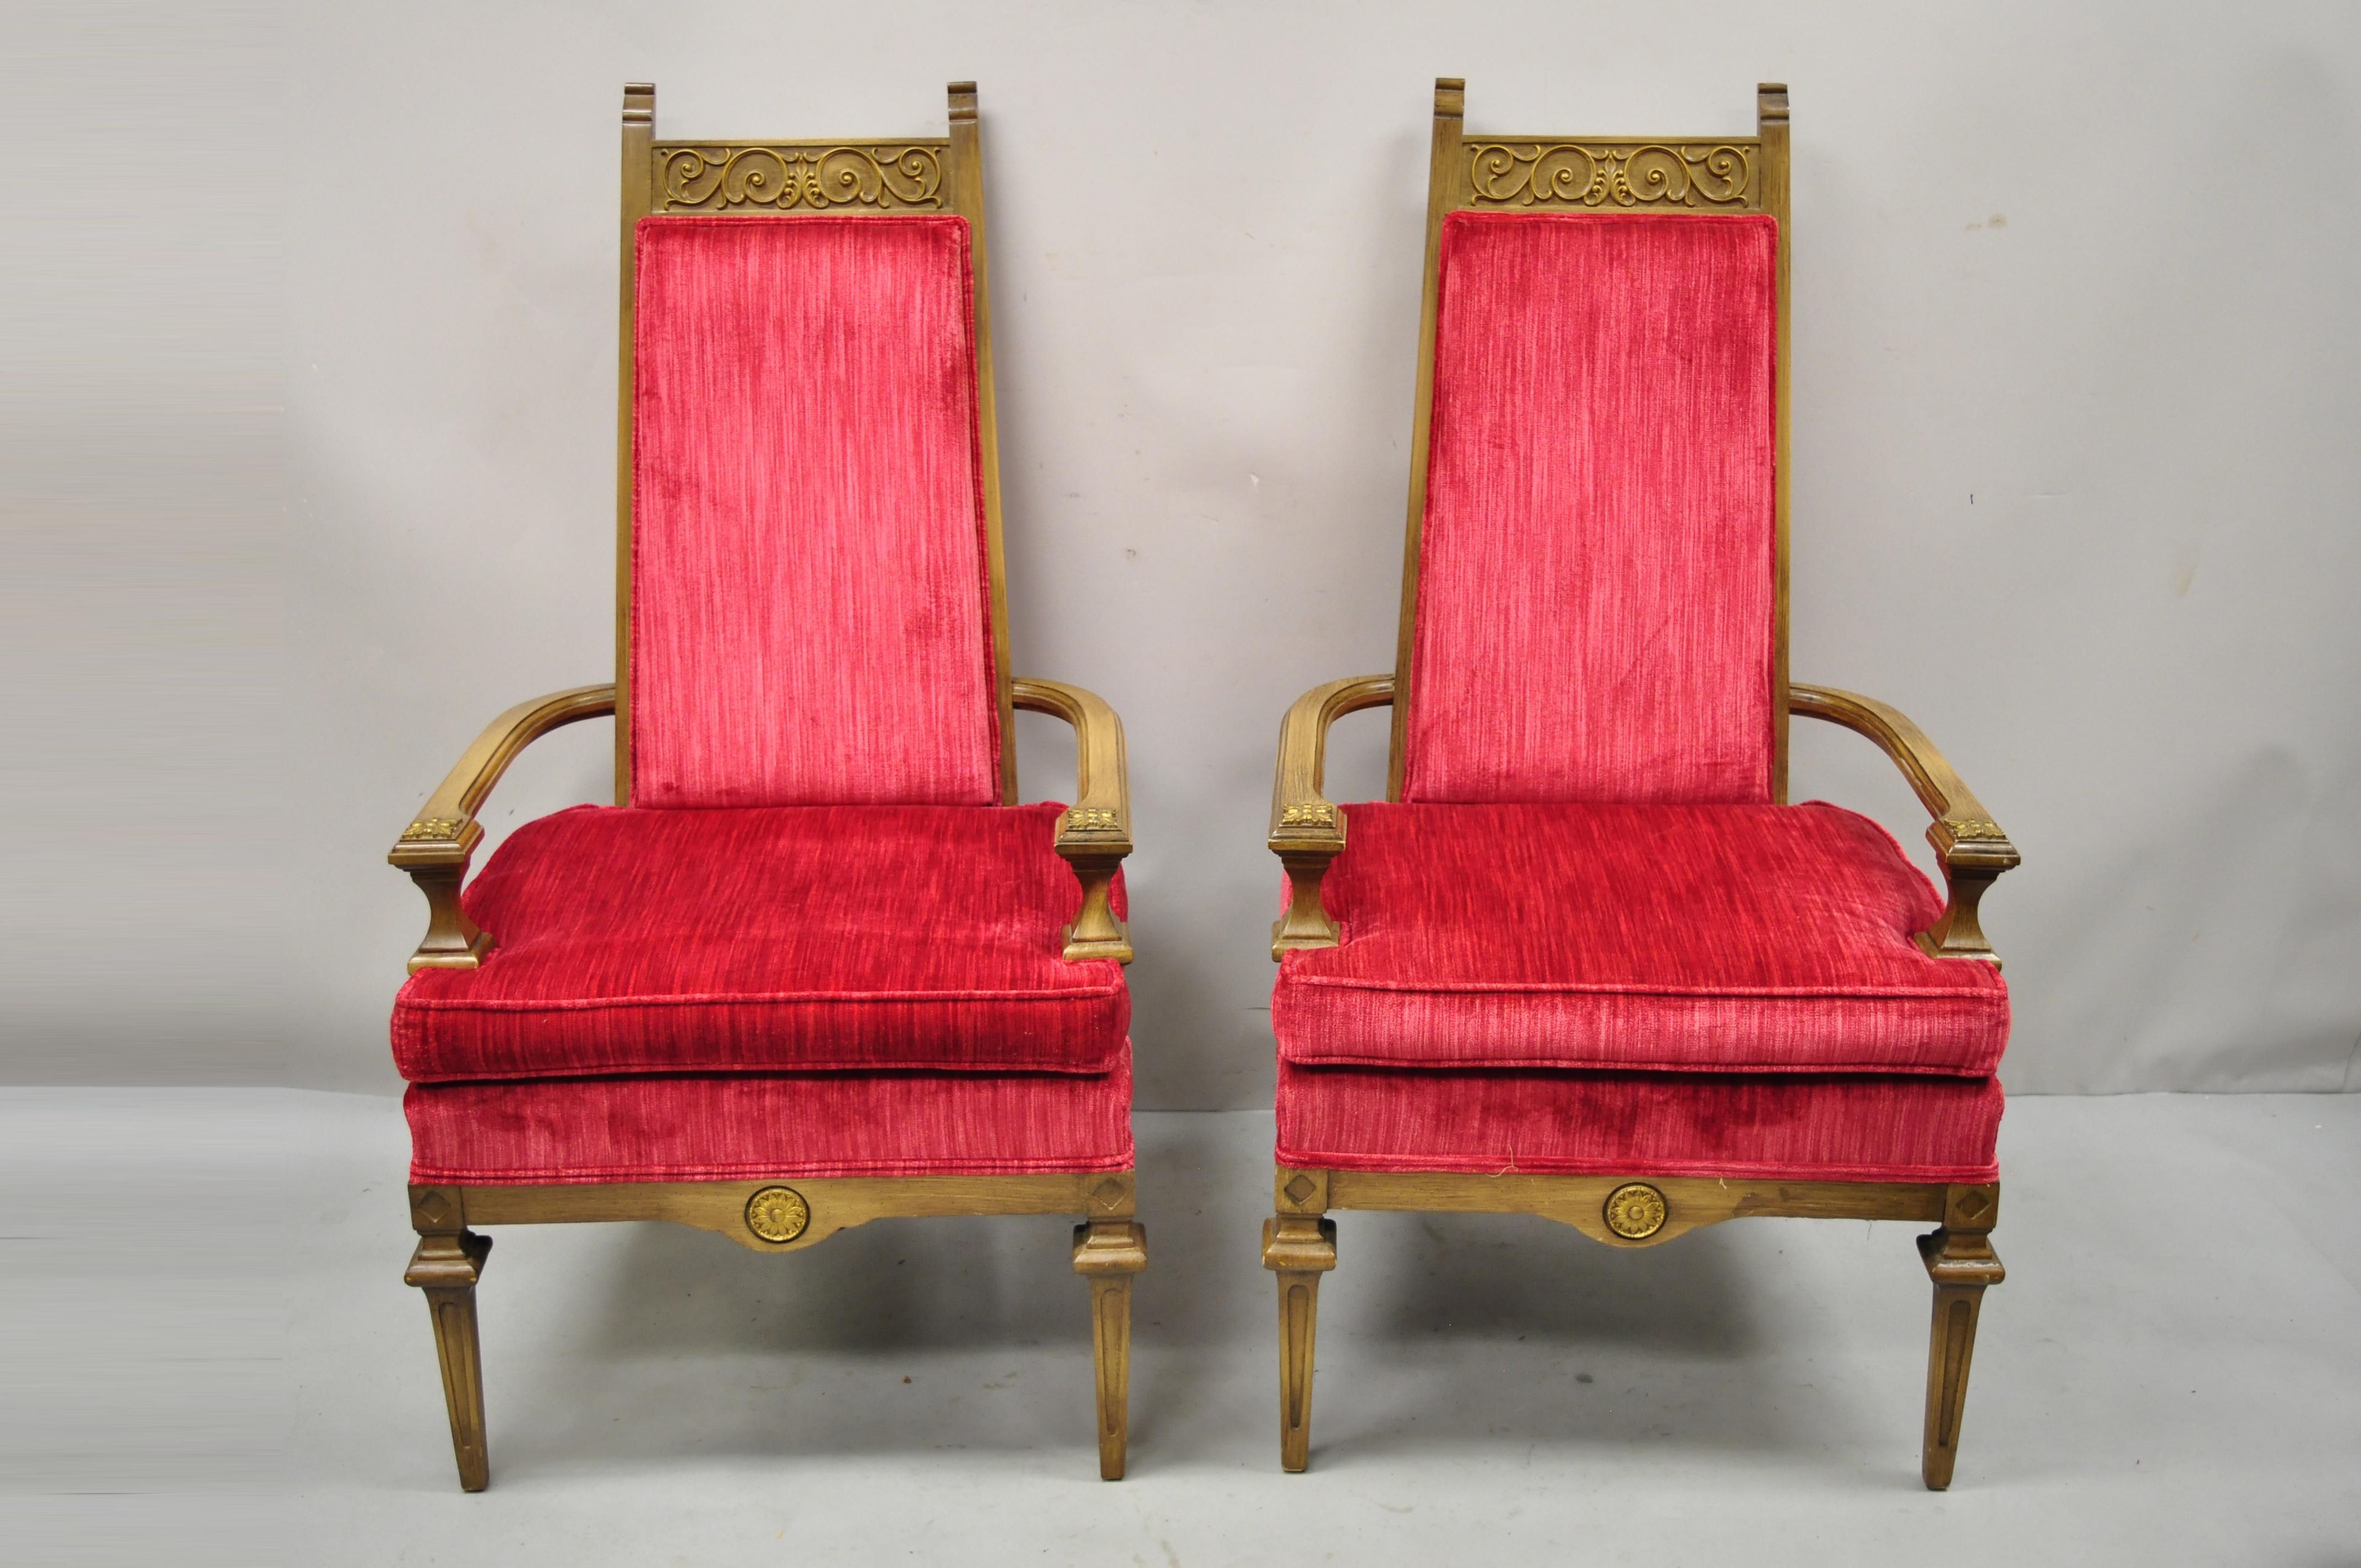 Vintage italienischer Stil Hollywood Regency rot hohe zurück Lounge-Sessel - ein Paar. Artikel verfügt über Massivholzrahmen, schön geschnitzte Details, sehr schöne Vintage-Paar, großen Stil und Form. Etwa Mitte des 20. Jahrhunderts. Abmessungen: